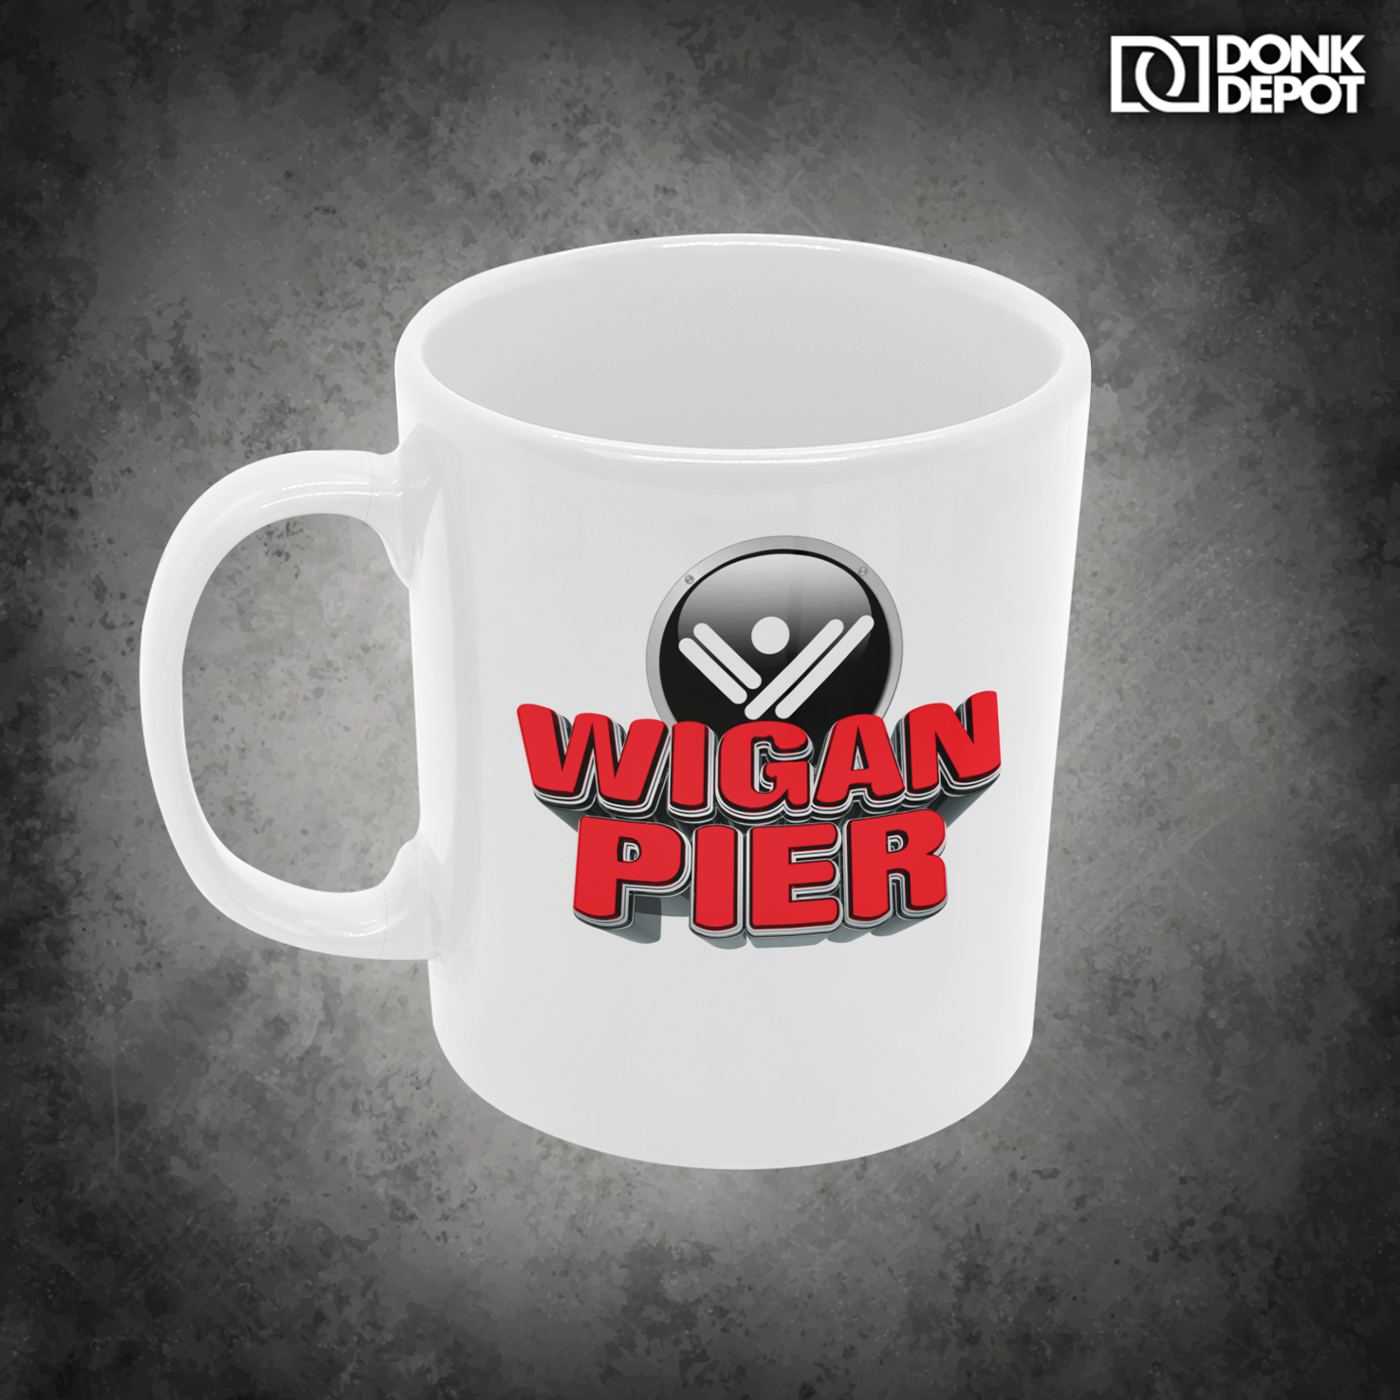 Wigan Pier mug (white)